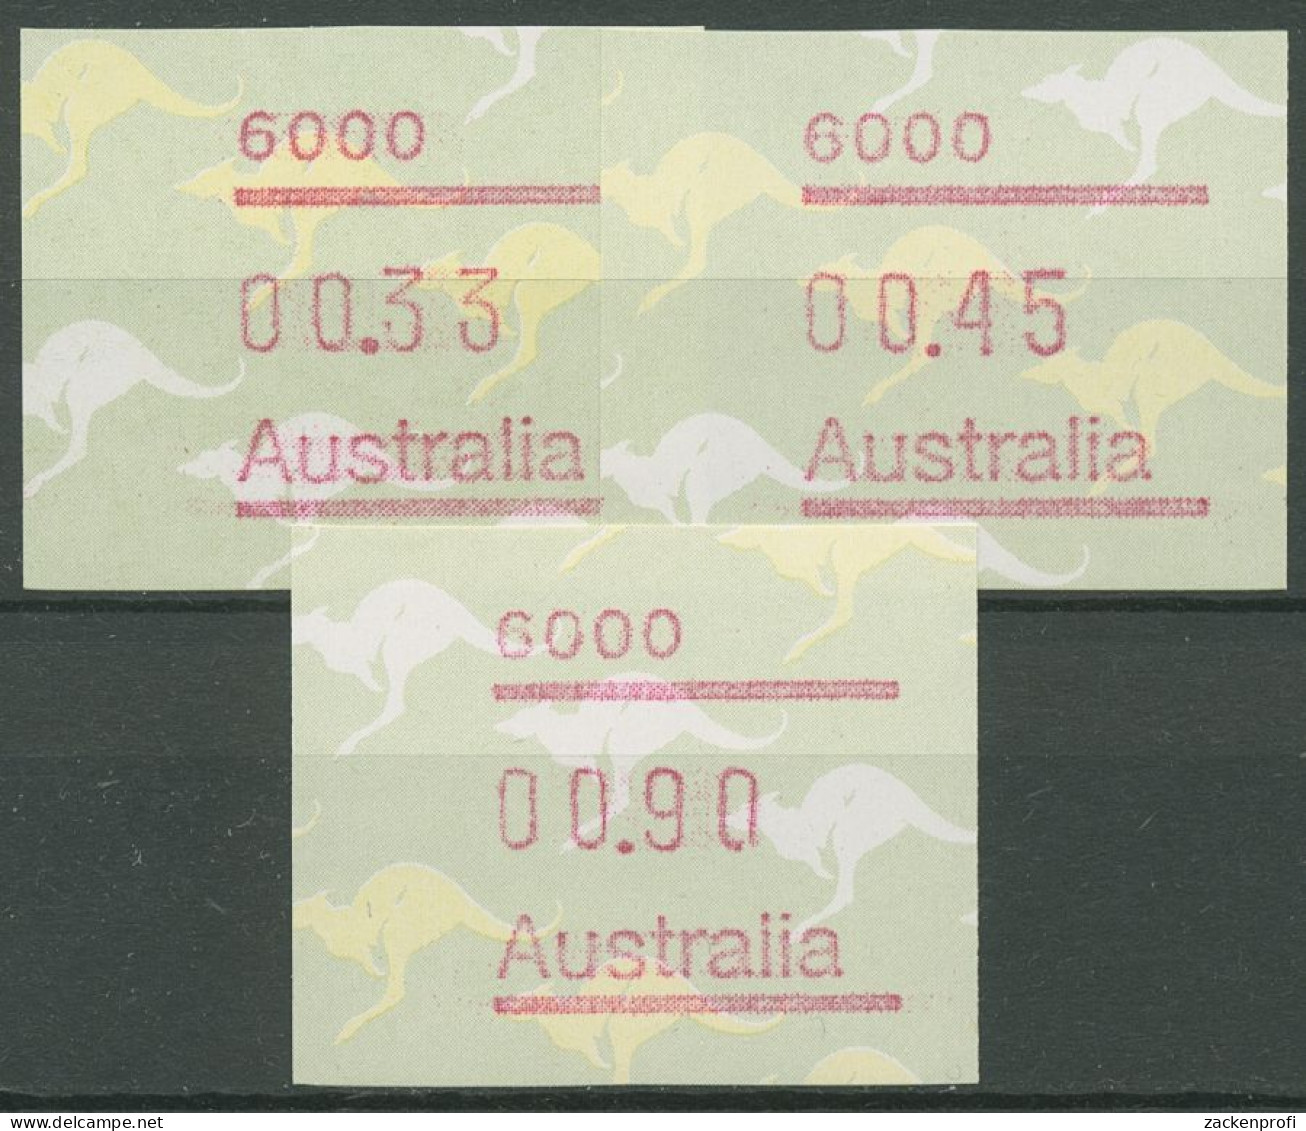 Australien 1985 Känguruh Tastensatz Automatenmarke 4 S1, 6000 Postfrisch - Machine Labels [ATM]